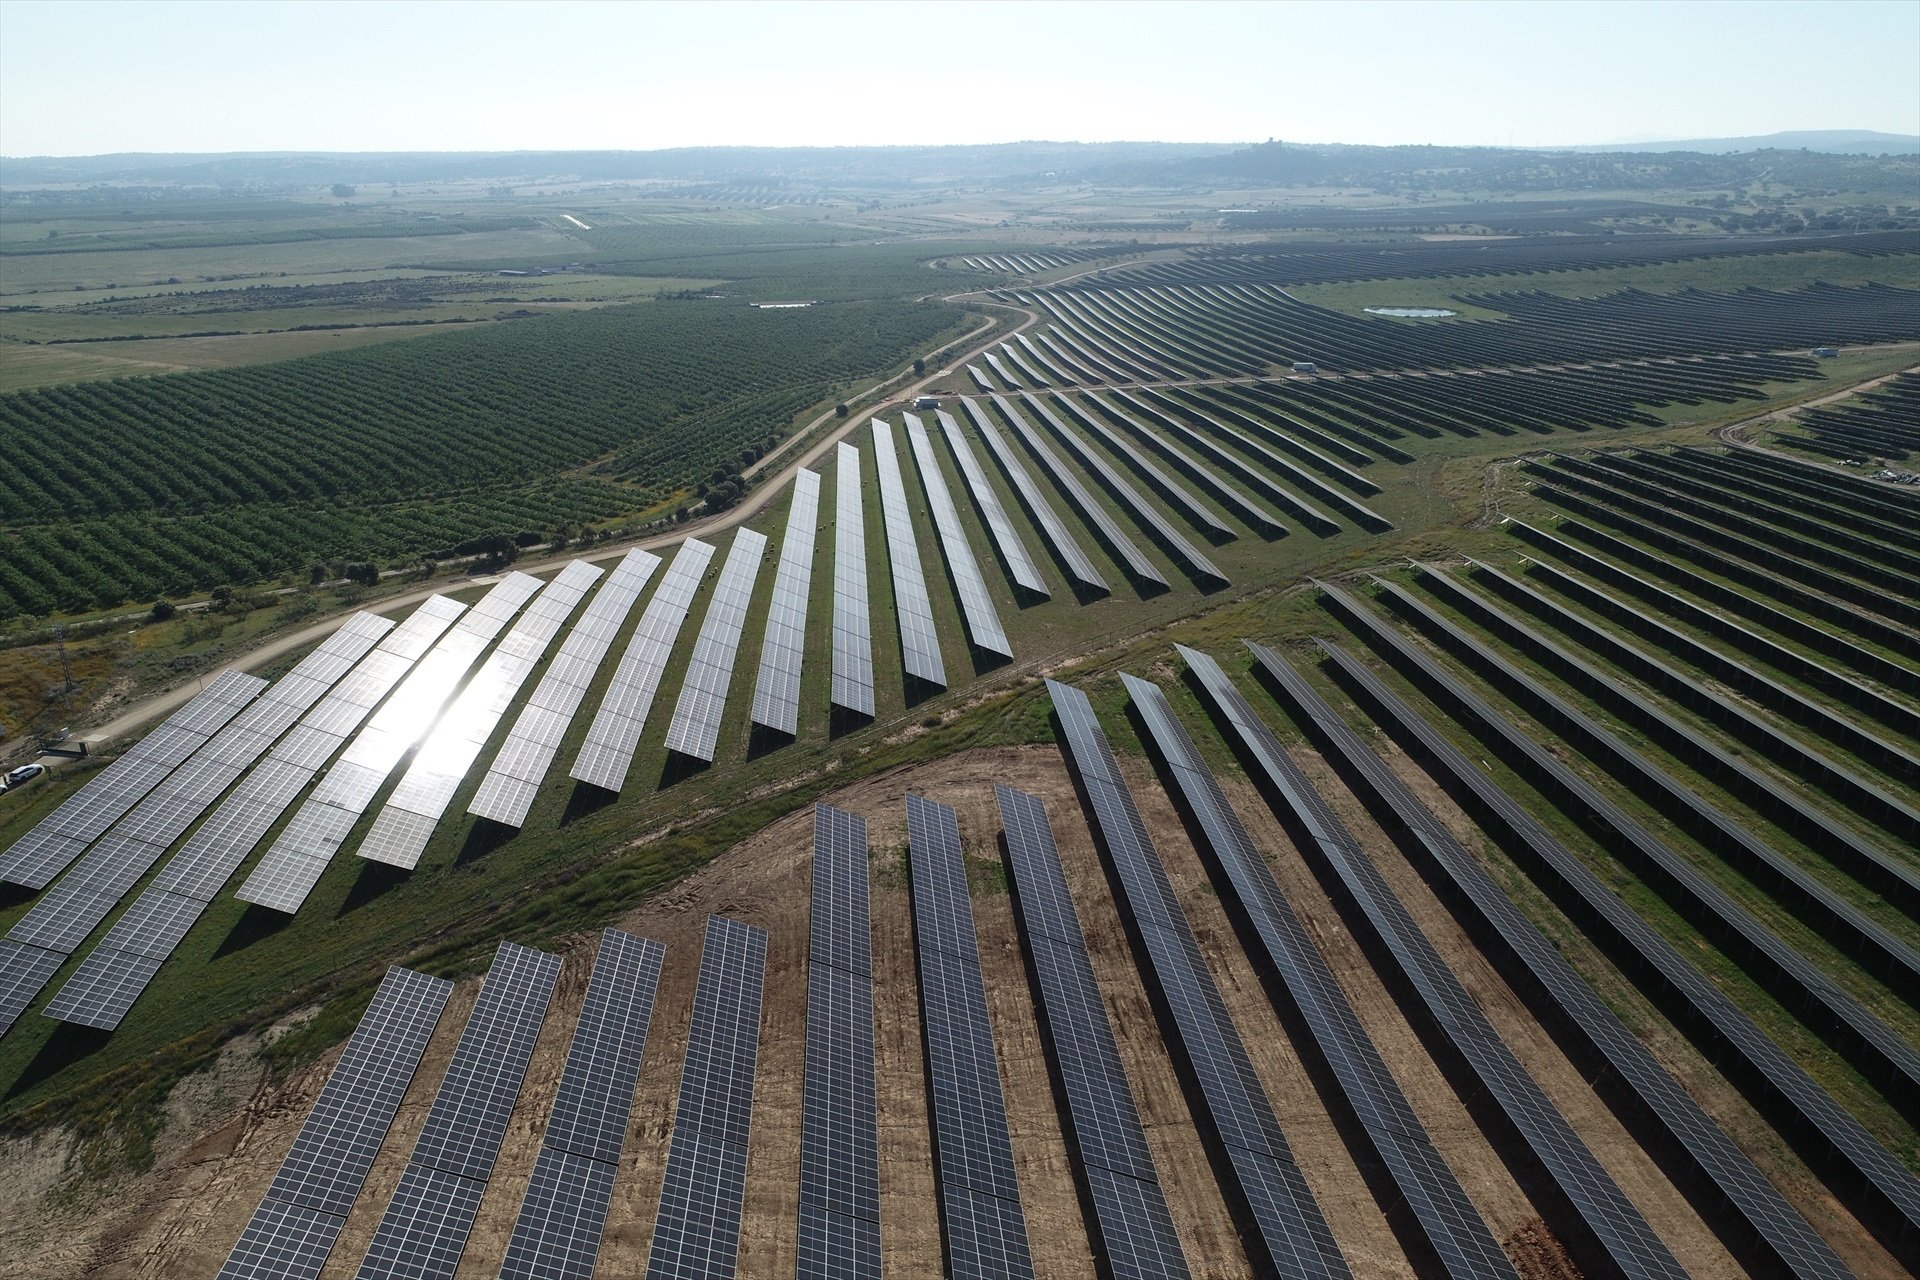 La potencia fotovoltaica instalada en todo el mundo multiplica por diez la de 2014